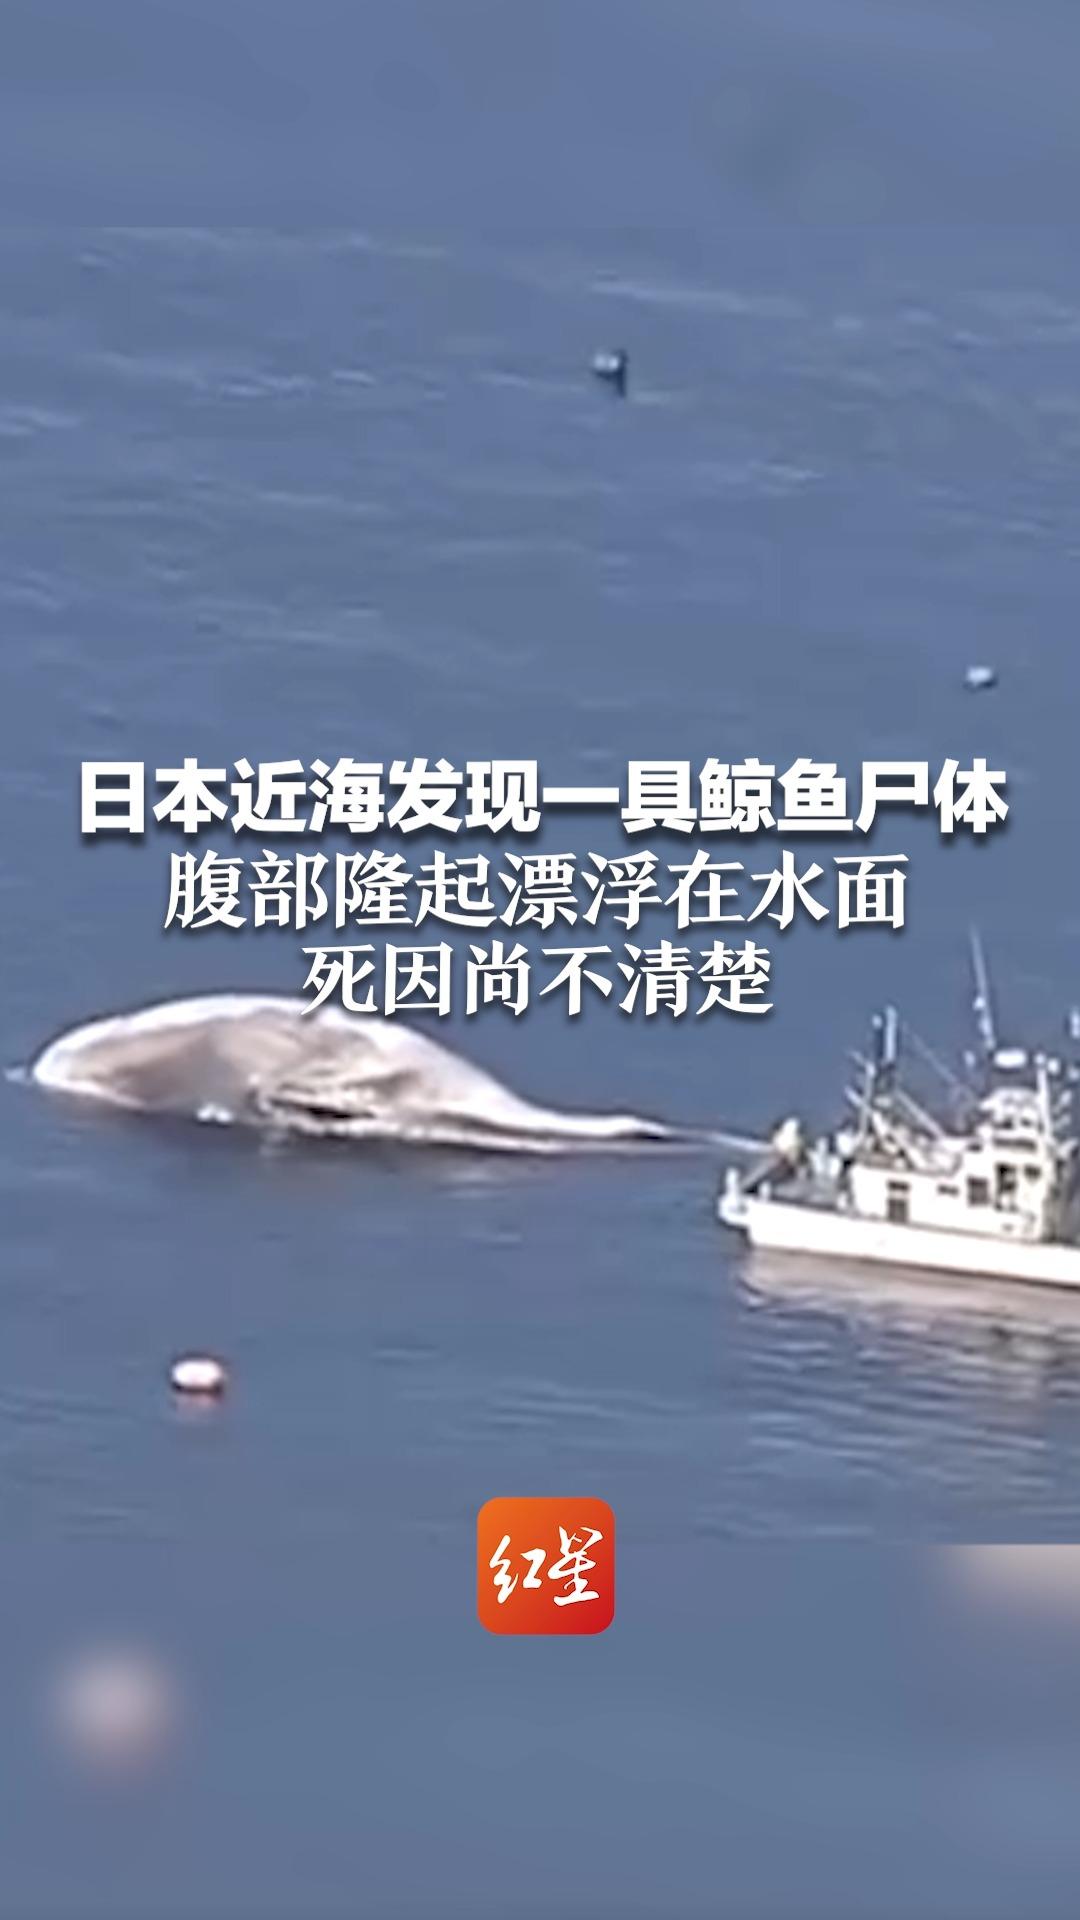 日本近海发现一具鲸鱼尸体 腹部隆起漂浮在水面 死因尚不清楚